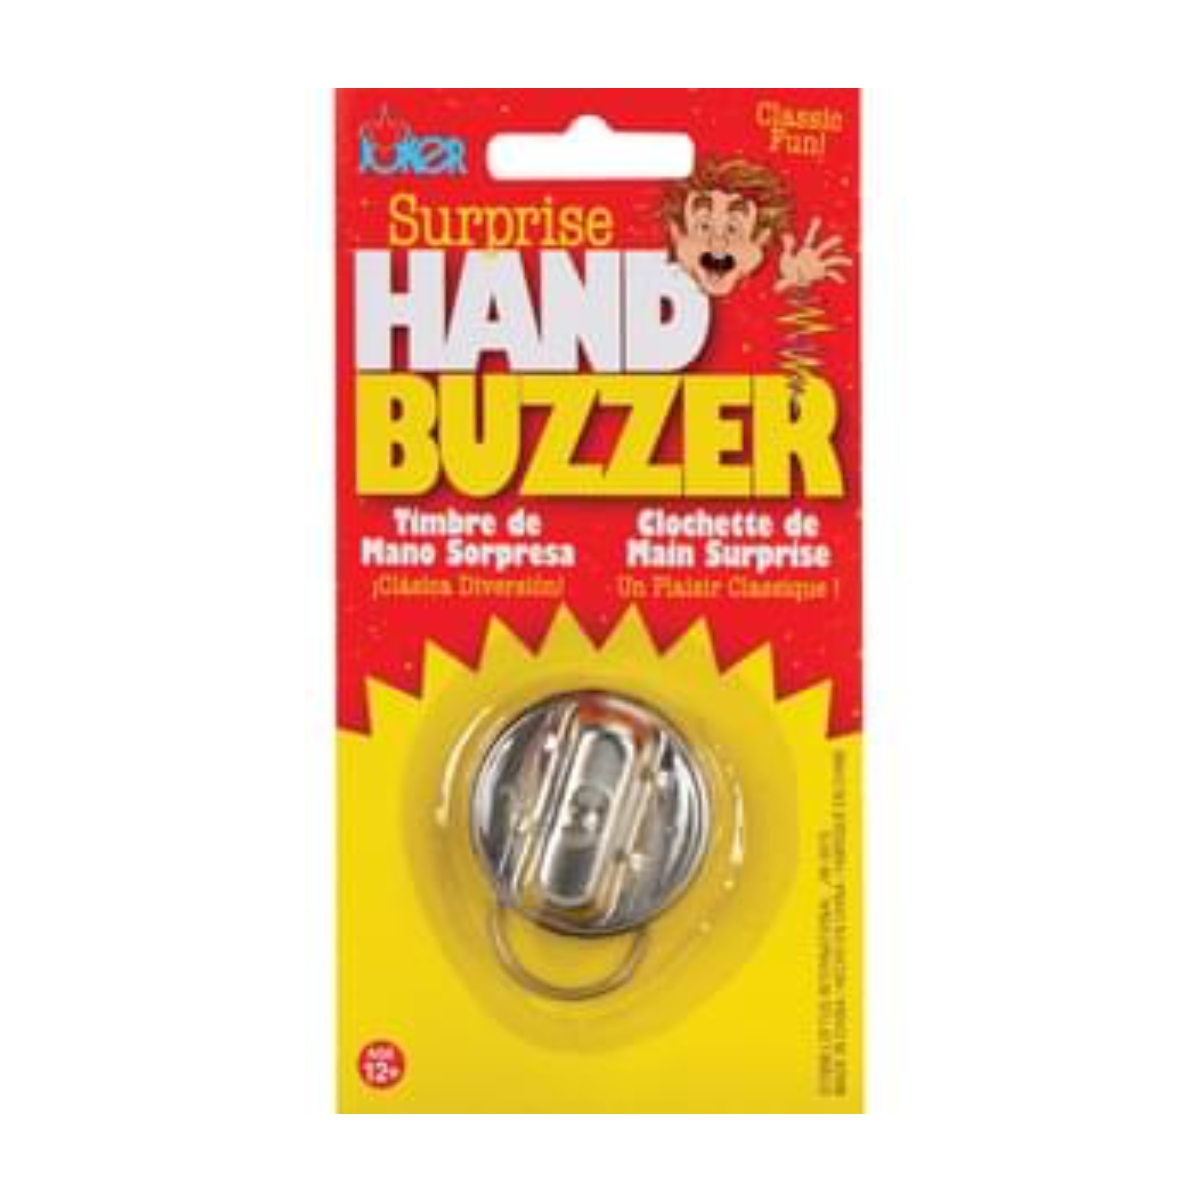 Hand Buzzer Deluxe